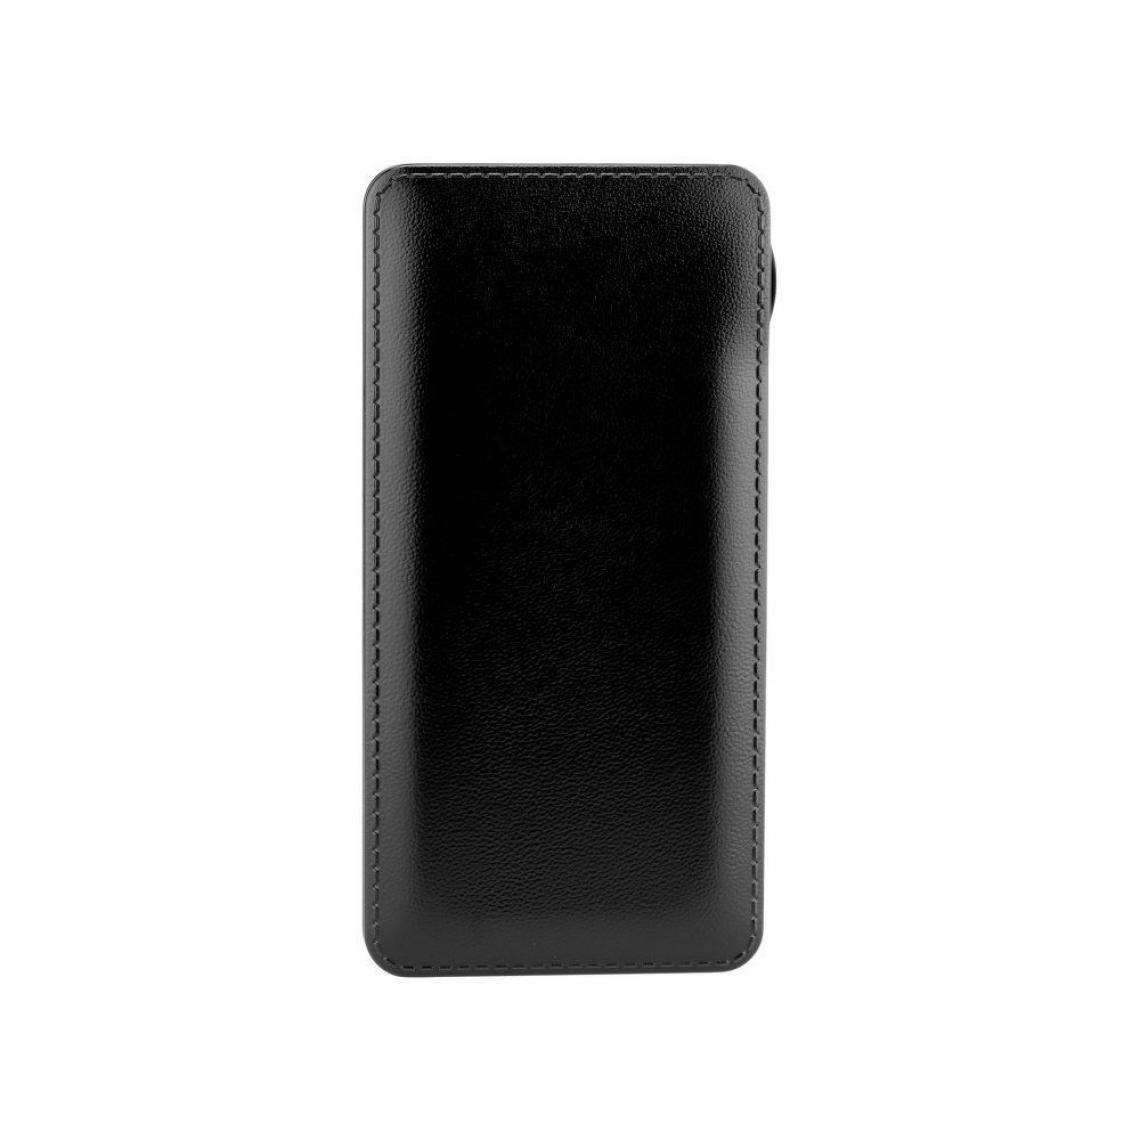 Ozzzo - Chargeur batterie externe 20000 mAh powerbank ozzzo noir pour BlackBerry KEYone Black Edition - Autres accessoires smartphone